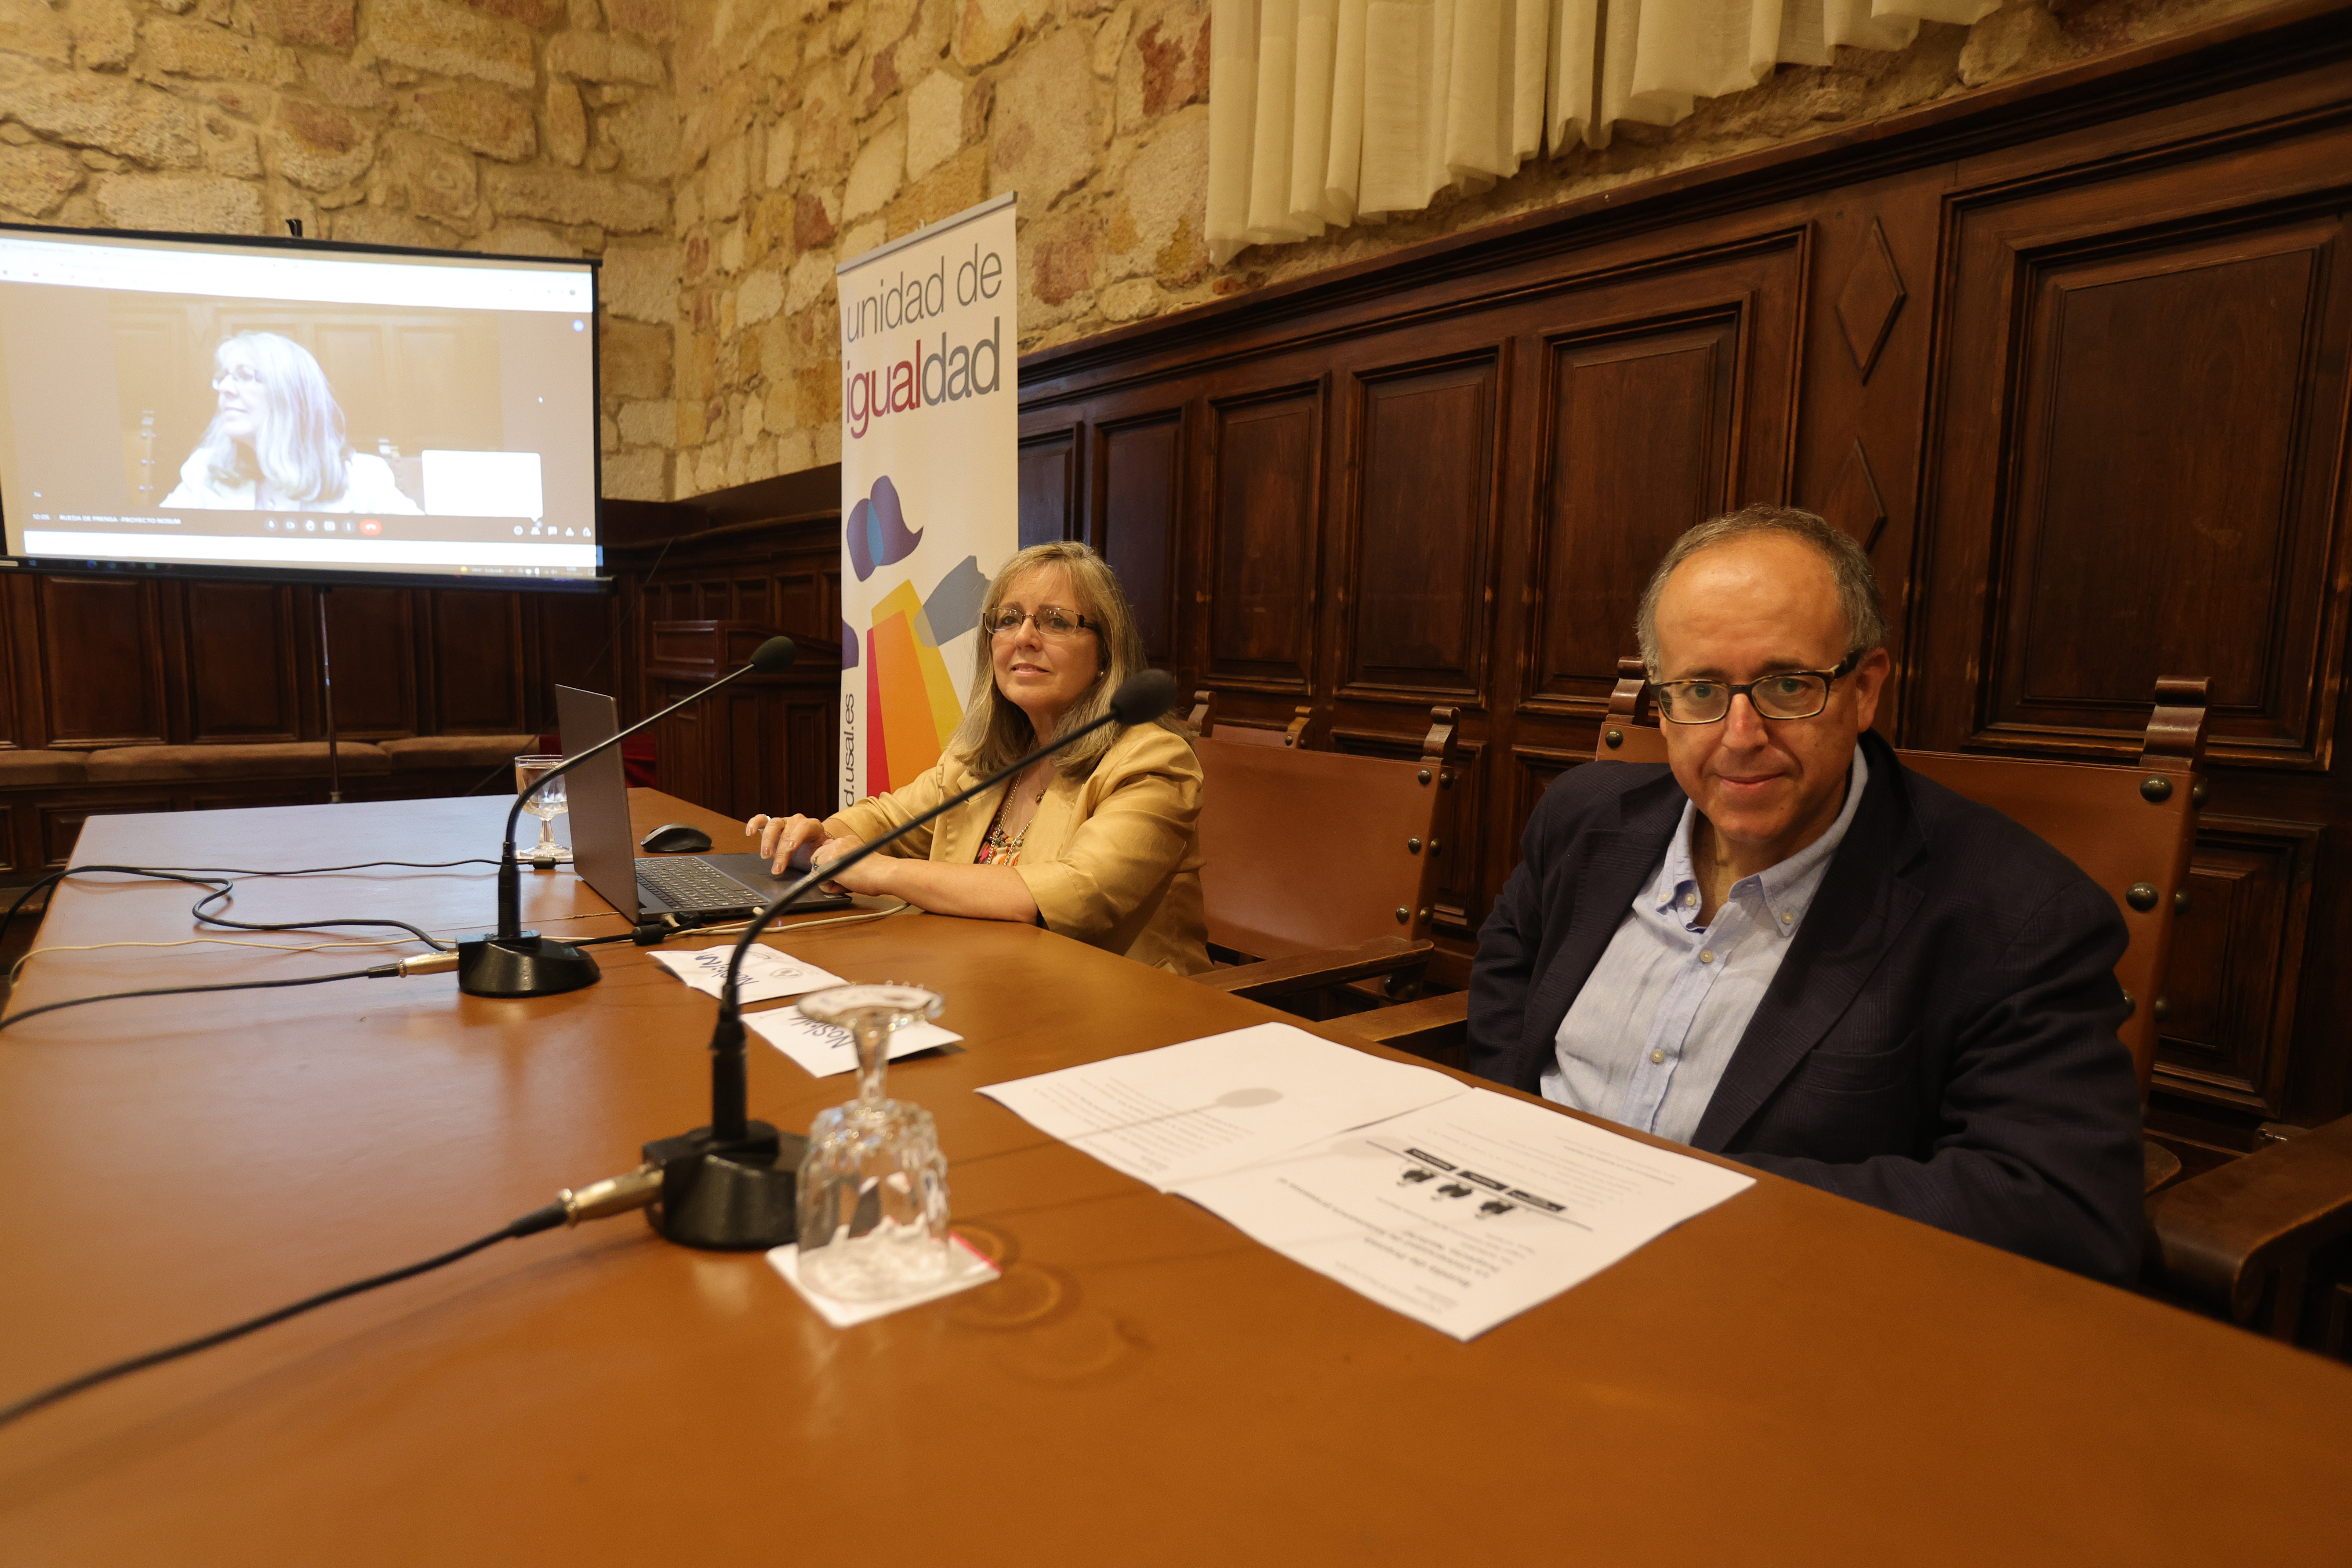 La Universidad de Salamanca distribuirá en sus ferias de bienvenida el kit ‘NoSUM’ para la prevención de agresiones sexuales por sumisión química 